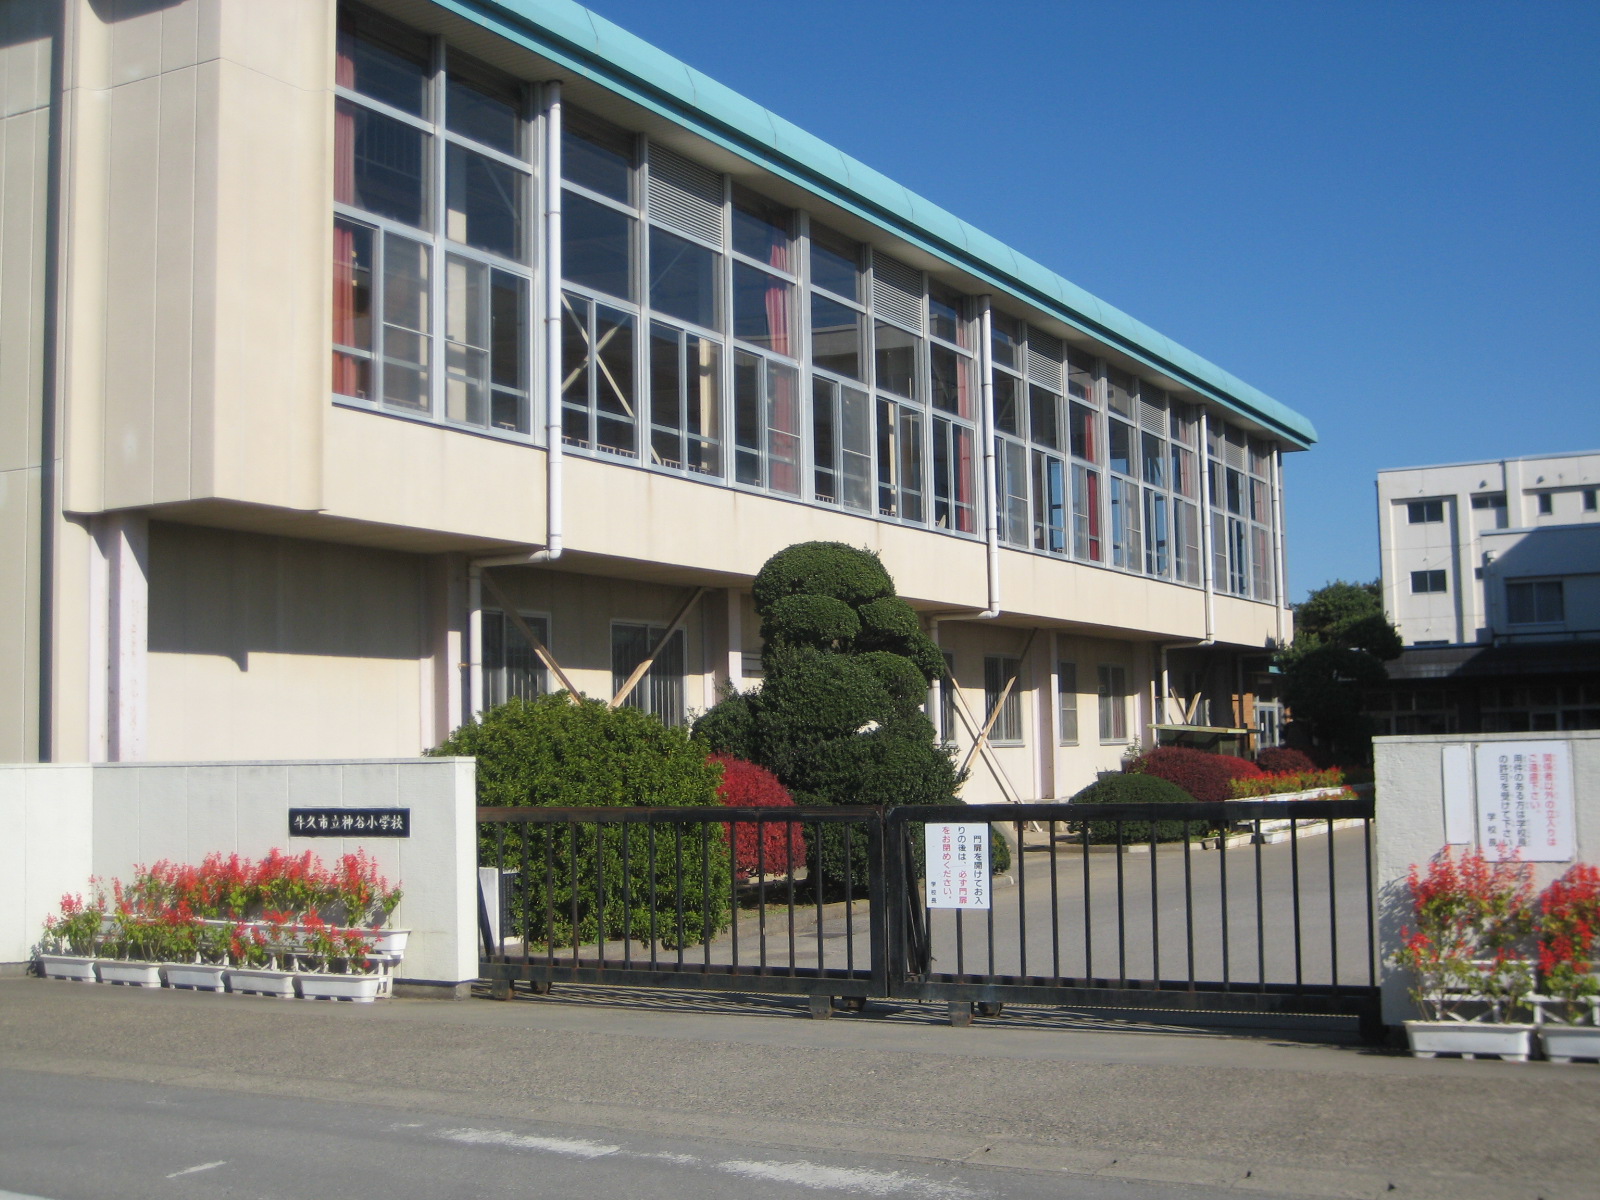 Primary school. Kamiya up to elementary school (Ushiku) (elementary school) 2200m